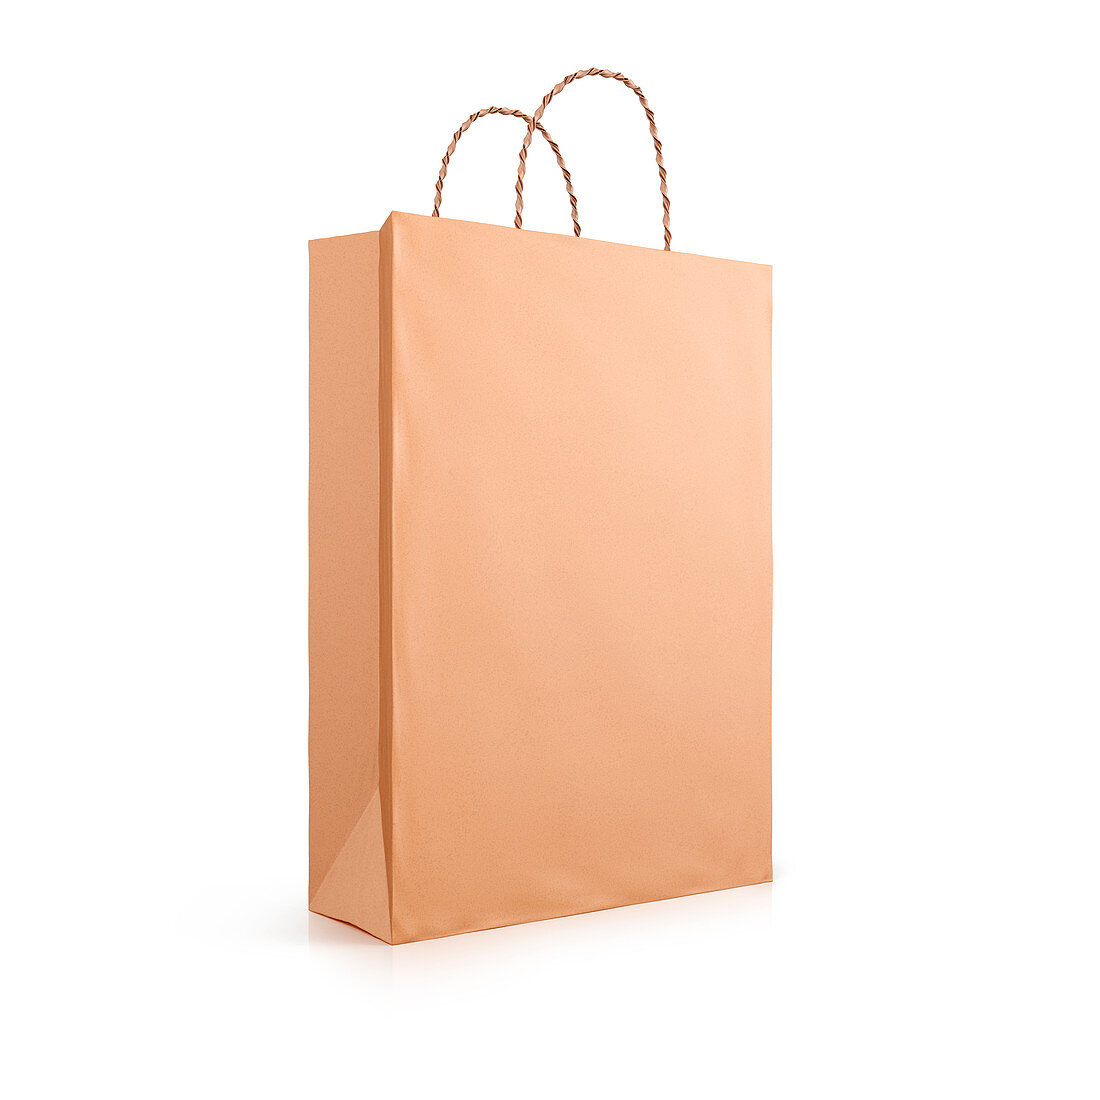 Brown paper bag, illustration